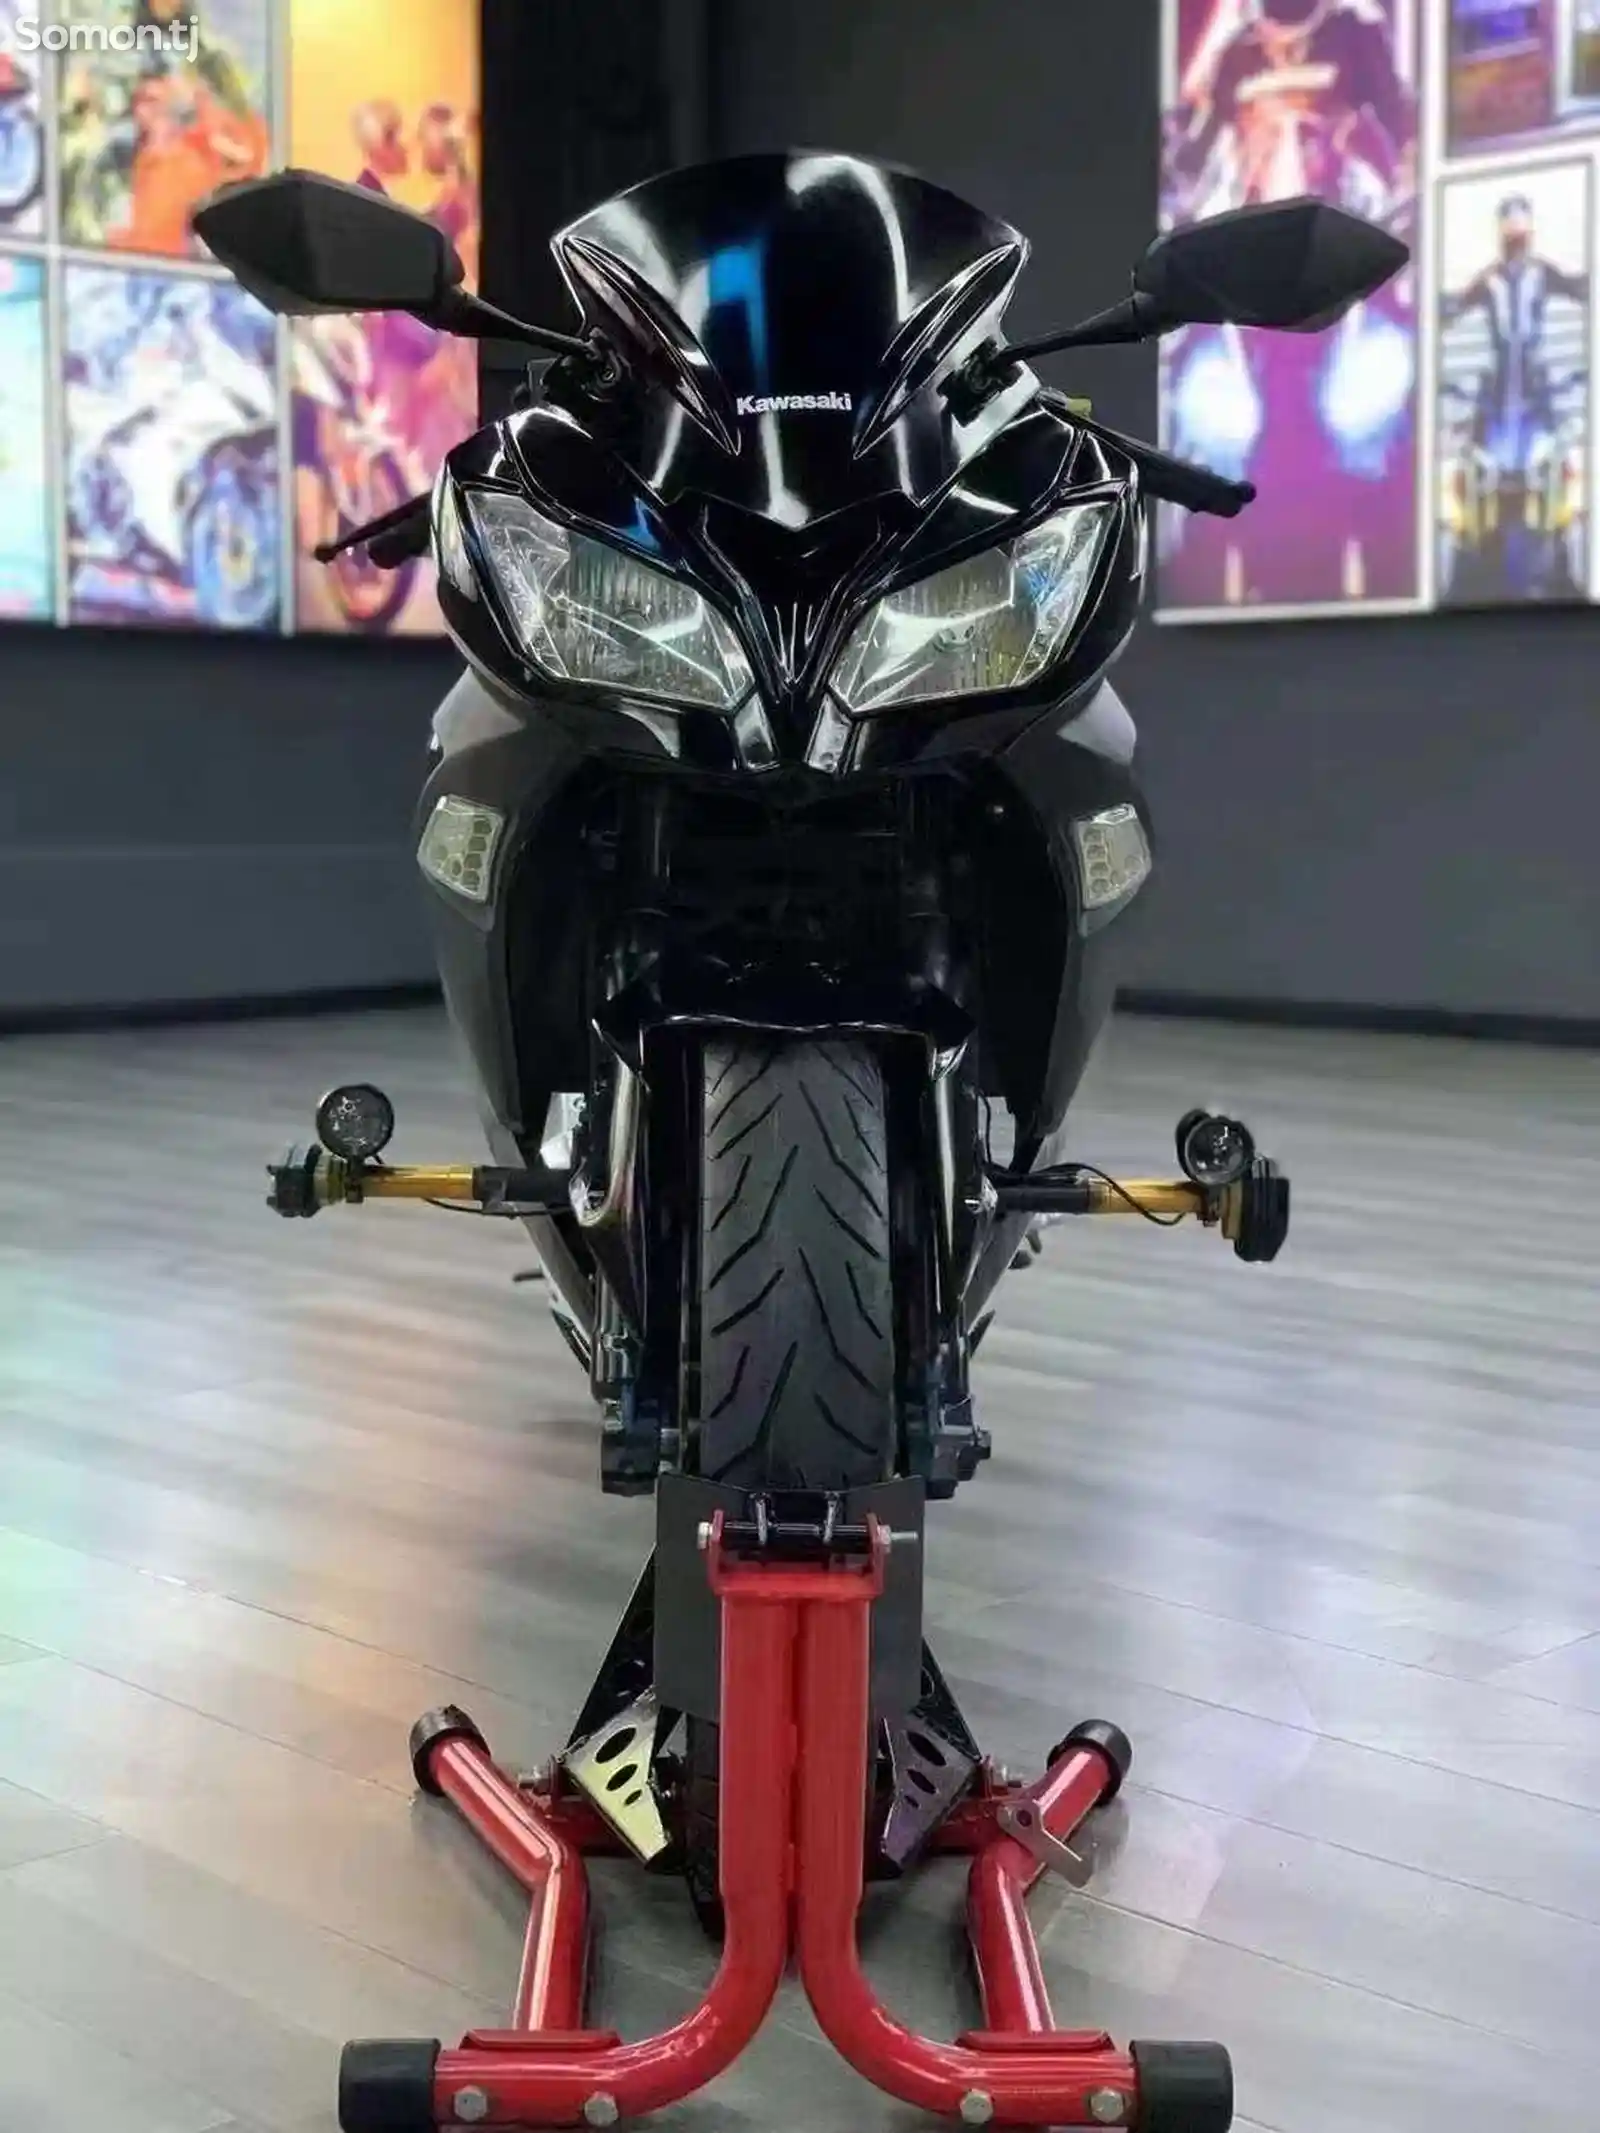 Мотоцикл Kawasaki Ninja 250cc на заказ-5